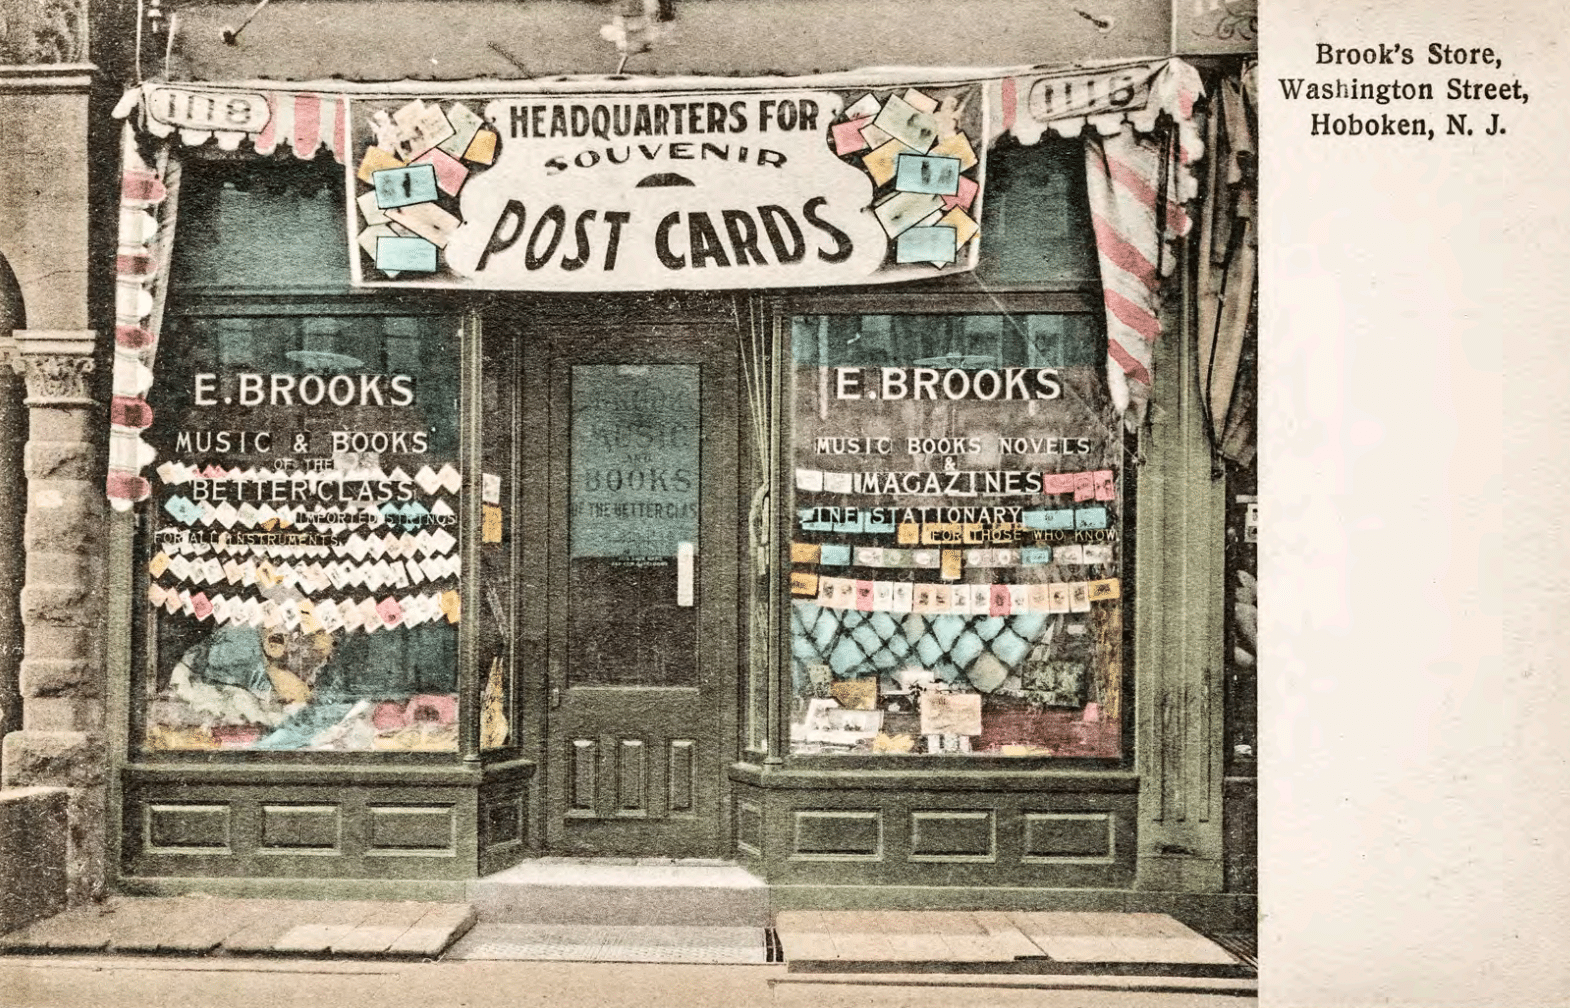 Hoboken Souvenir Post Cards back then